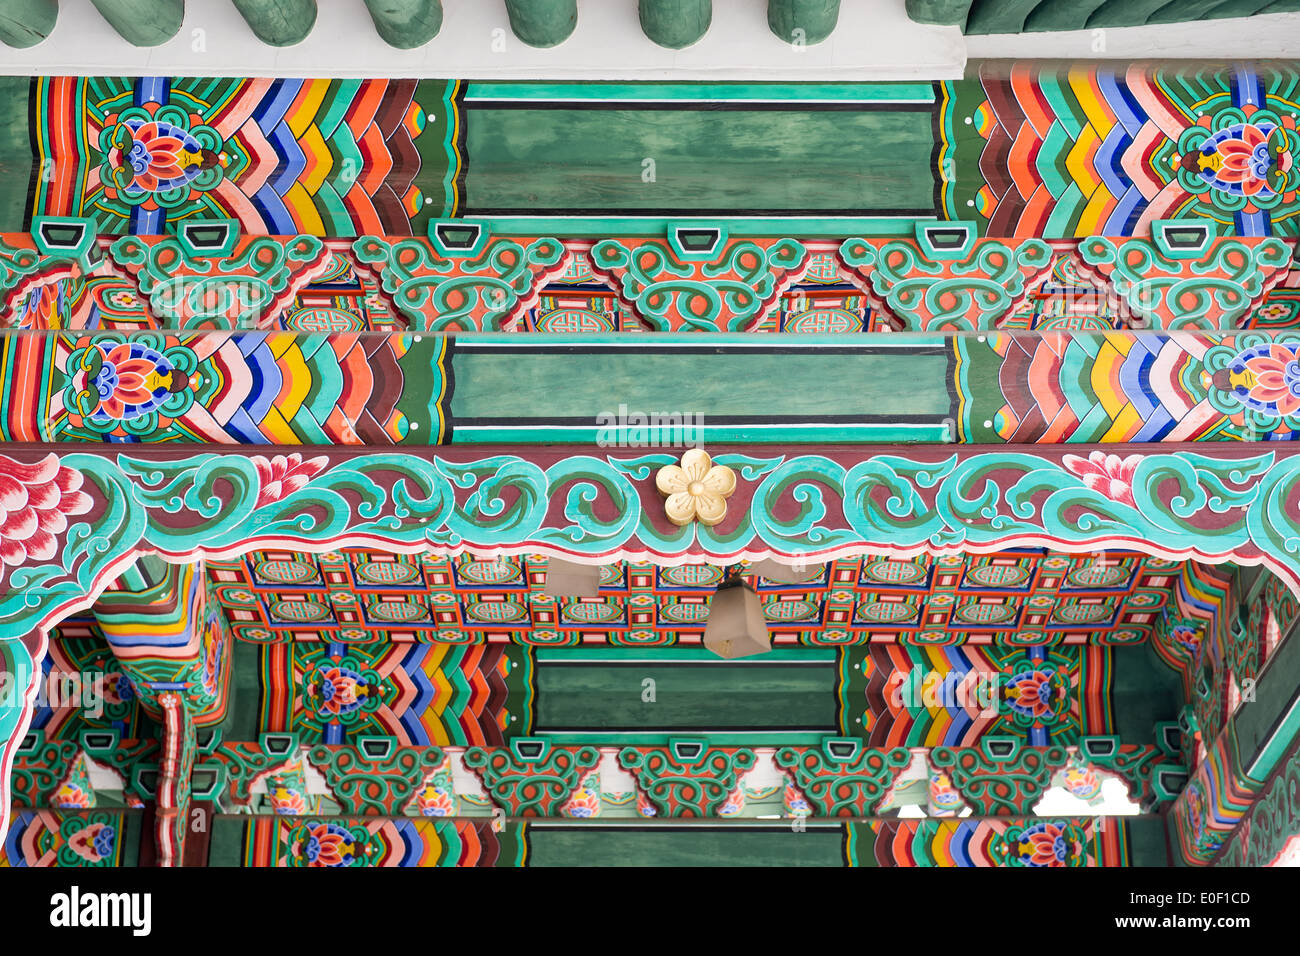 Détail architectural au palais changdeokgung à Séoul, Corée du Sud, site du patrimoine mondial Banque D'Images